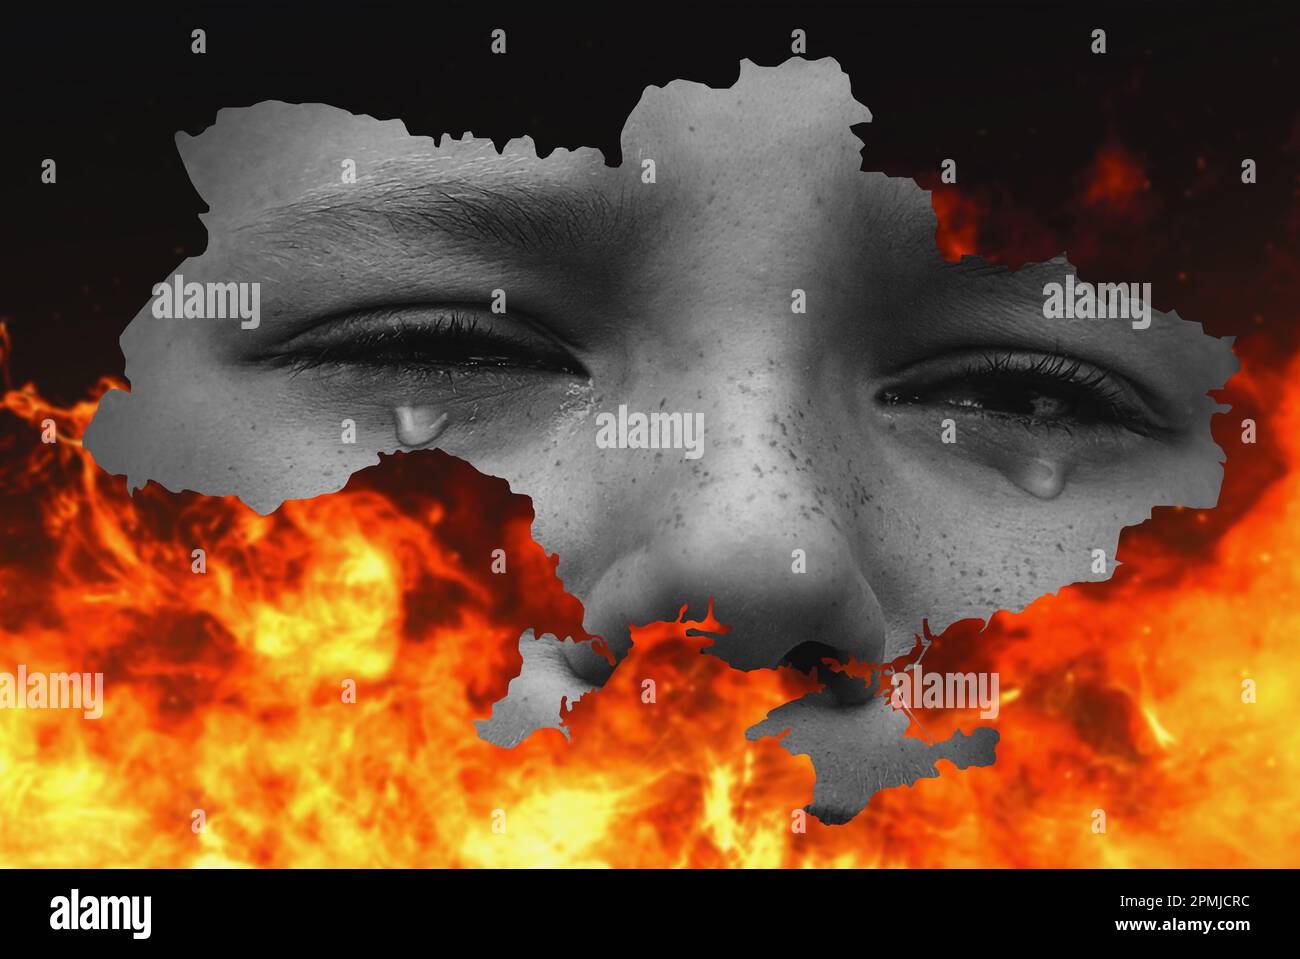 War between Russia and Ukraine. Map of Ukraine on fire. stop the war Stock Photo